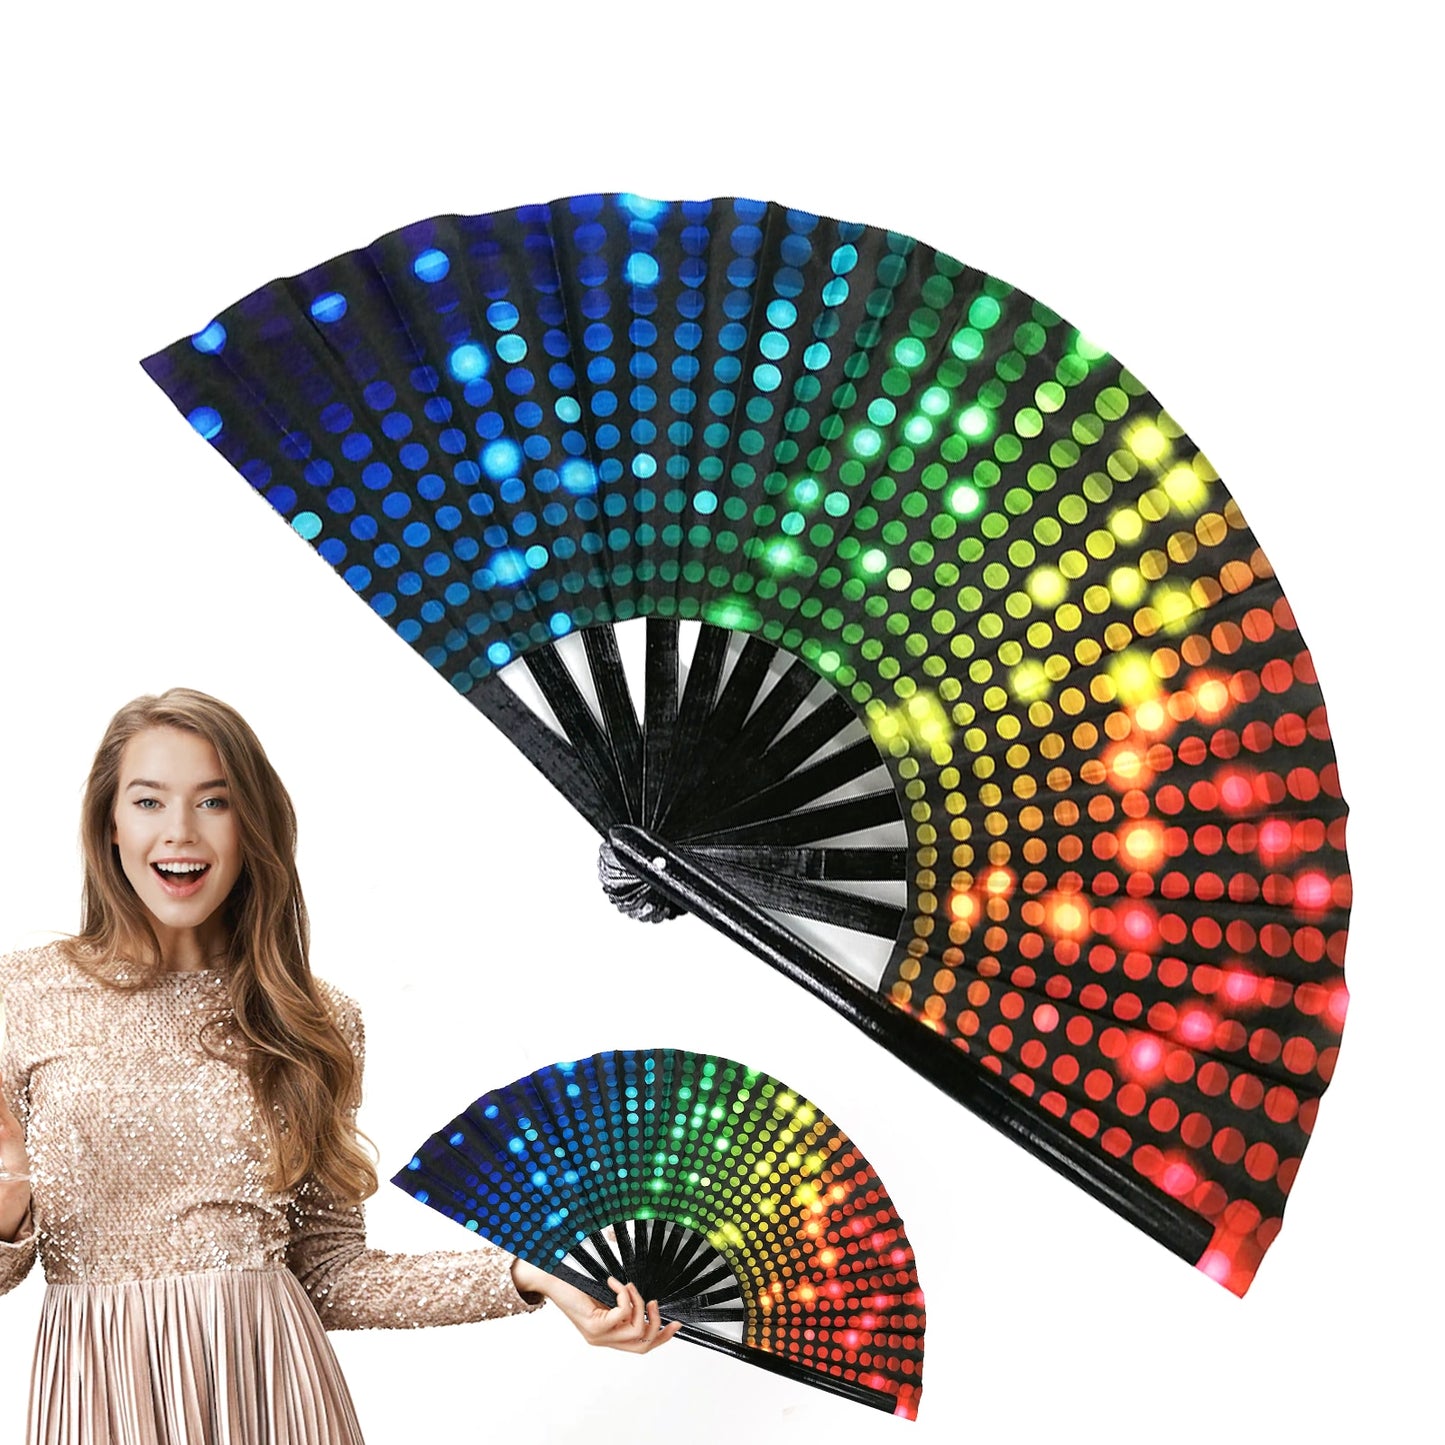 Large Disco Fan